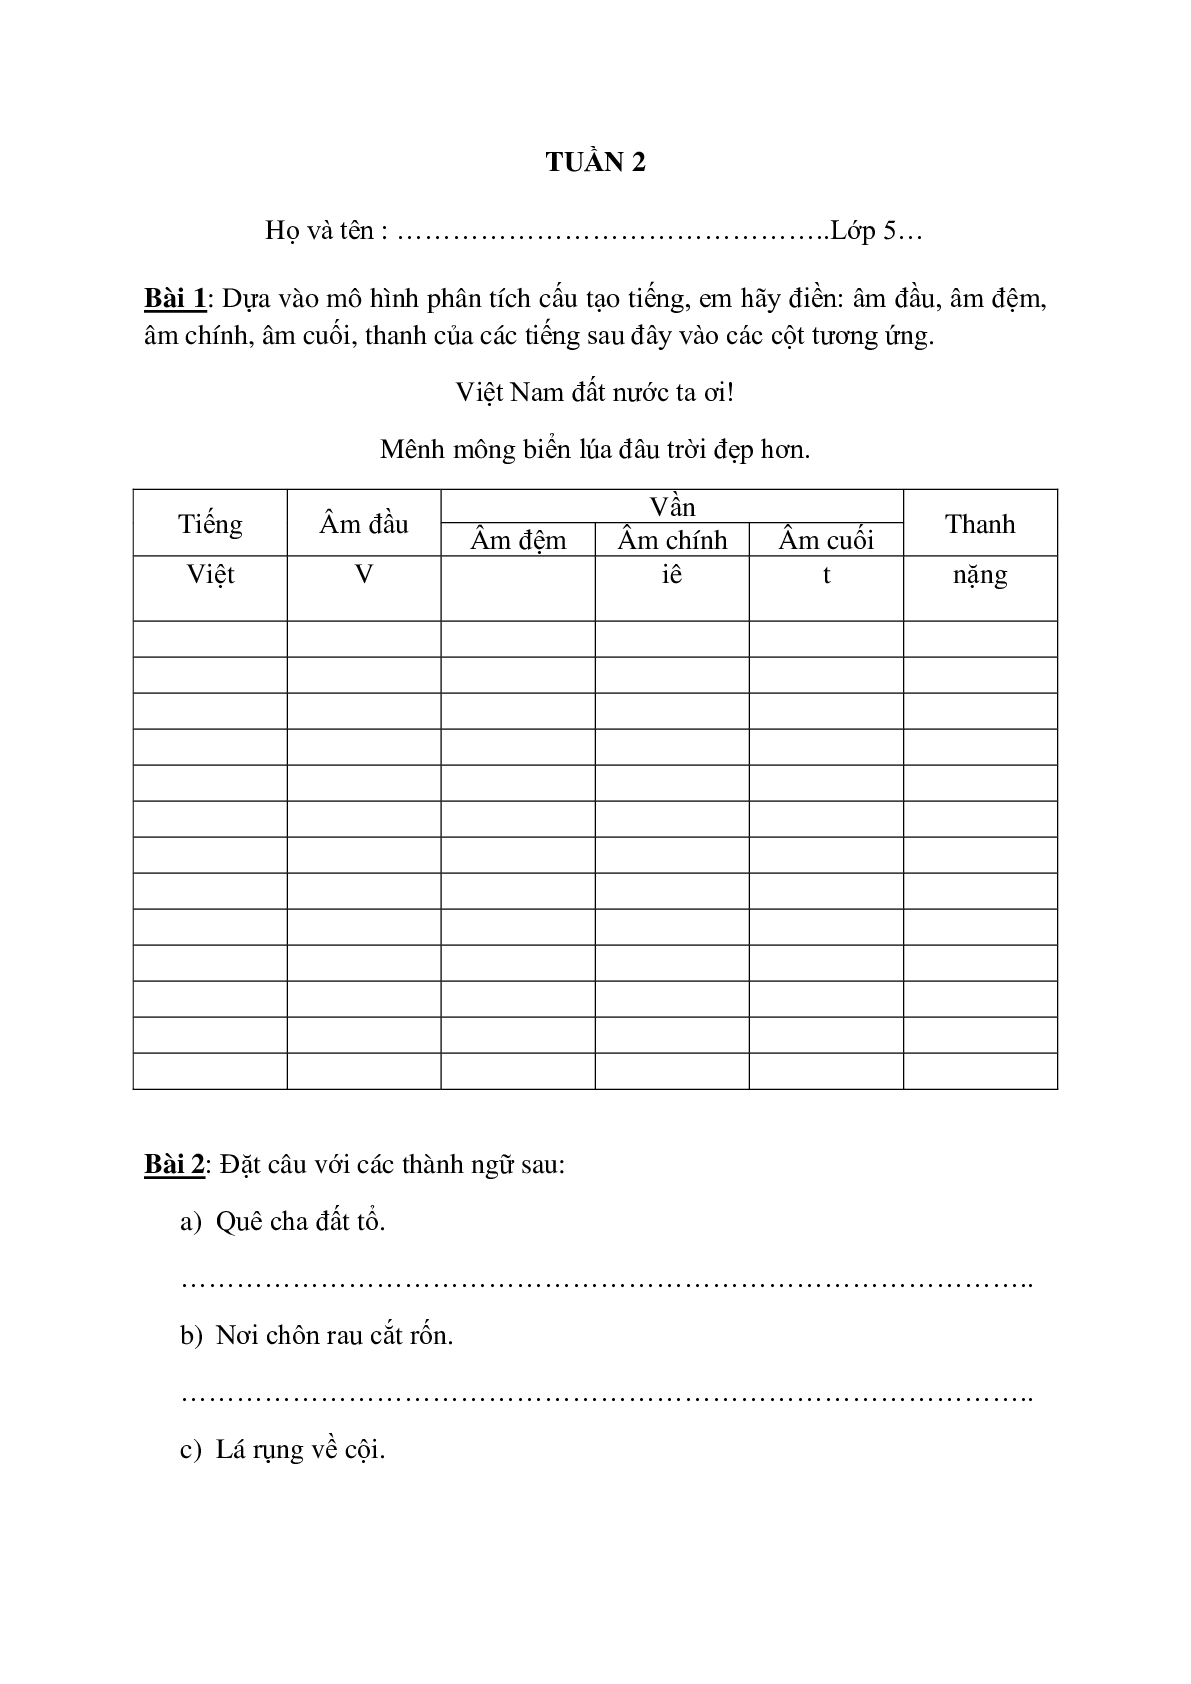 Bài tập nâng cao môn Tiếng Việt lớp 5 (trang 4)